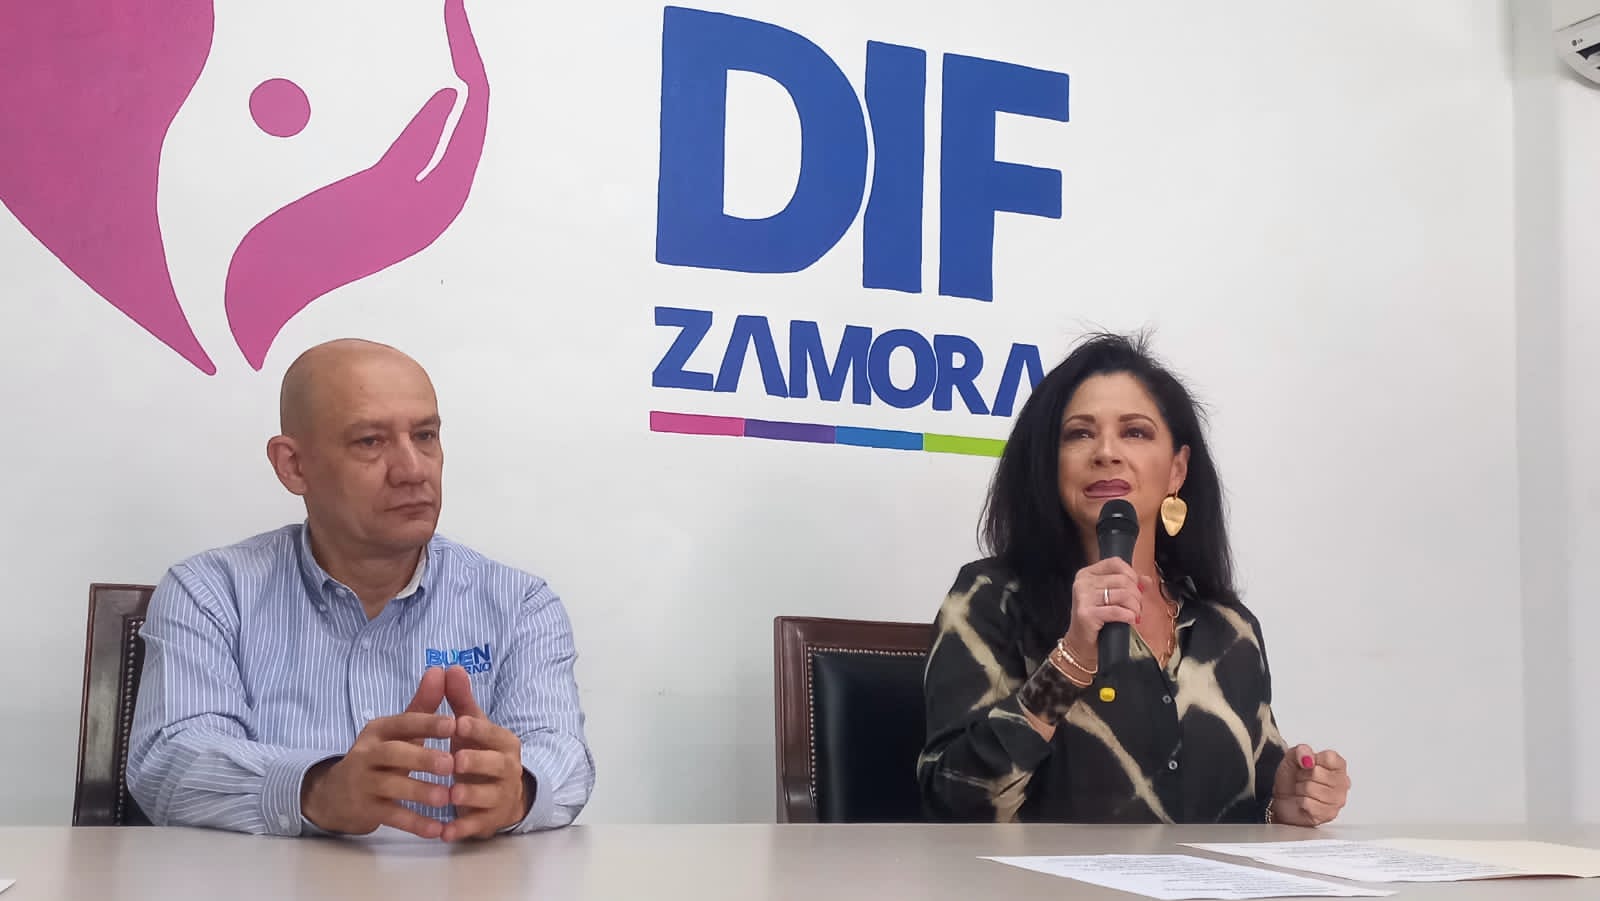 Unidad médica móvil del DIF Zamora intensifica jornada de servicios gratuito a la población